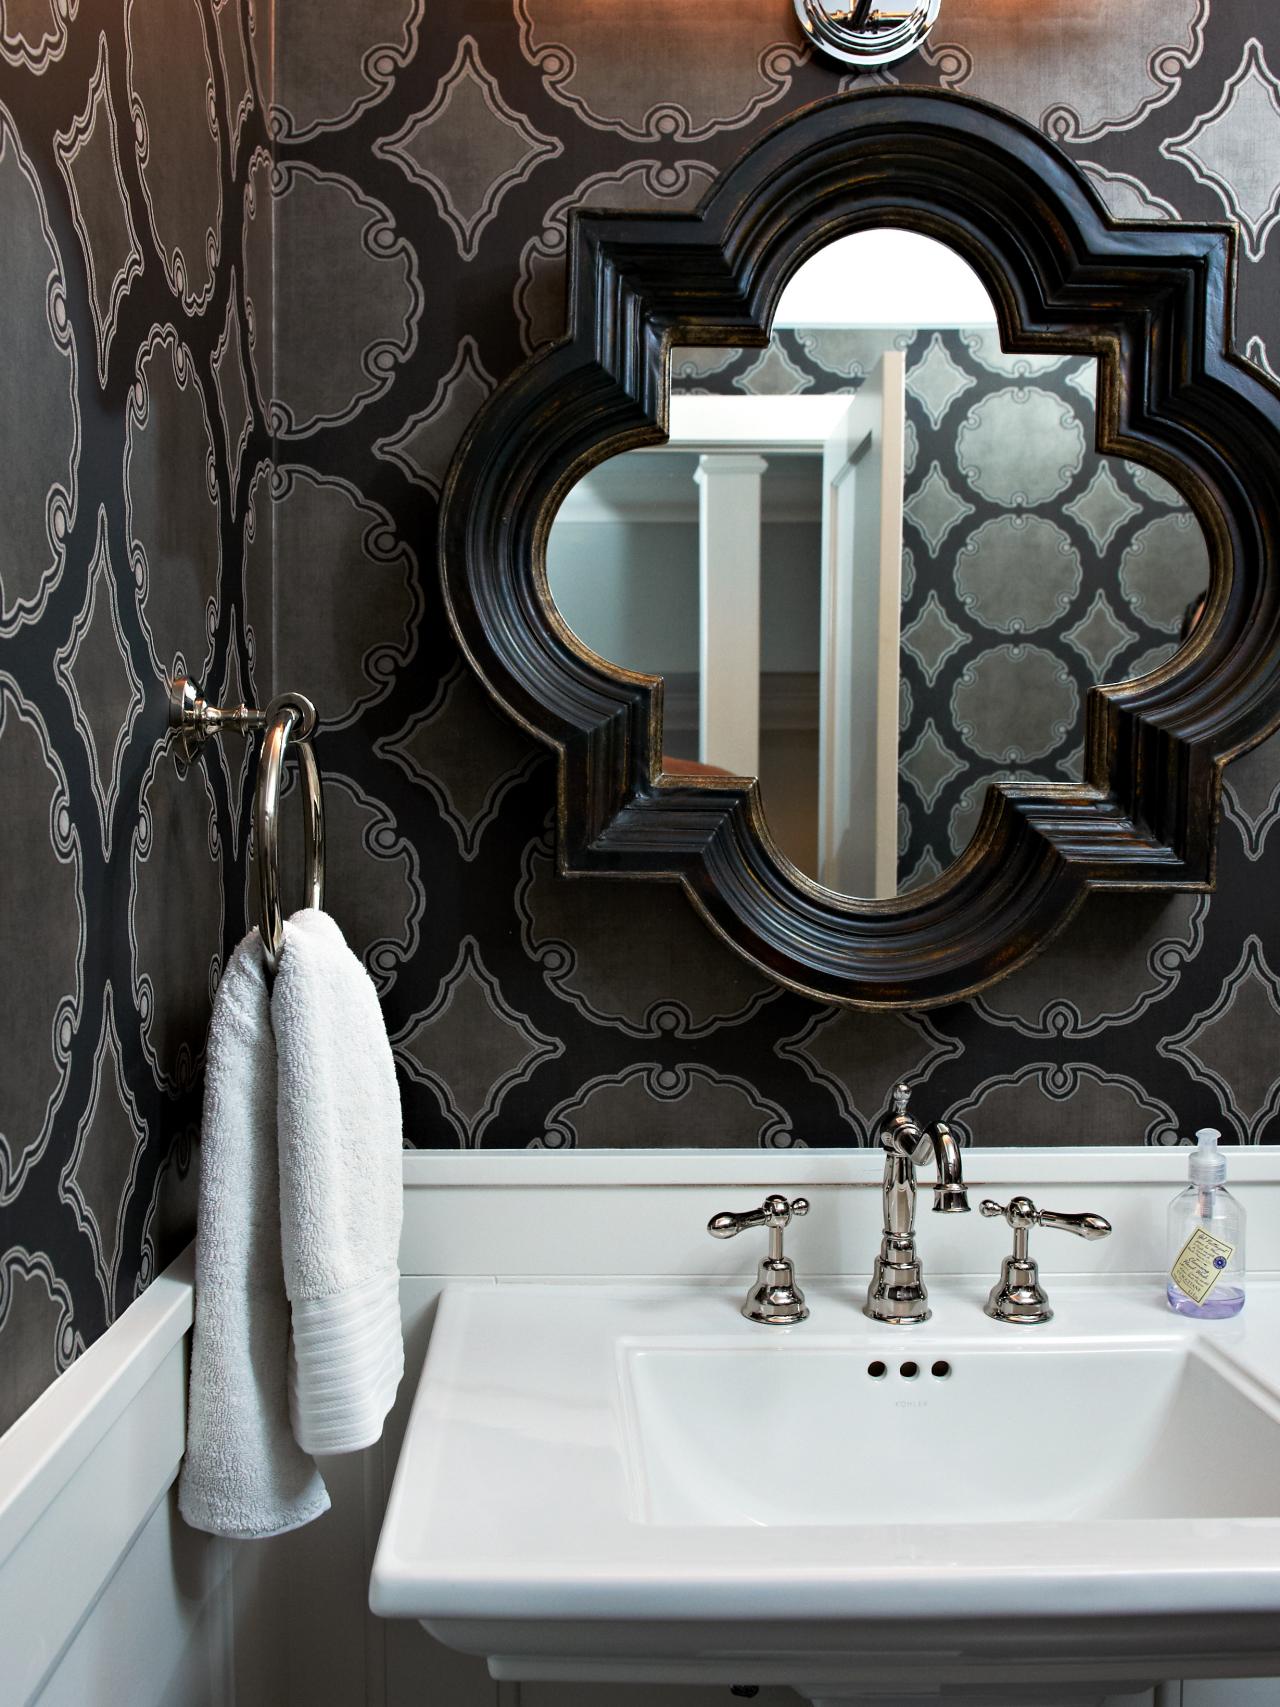 silver bathroom wallpaper,bathroom,room,tile,wall,interior design